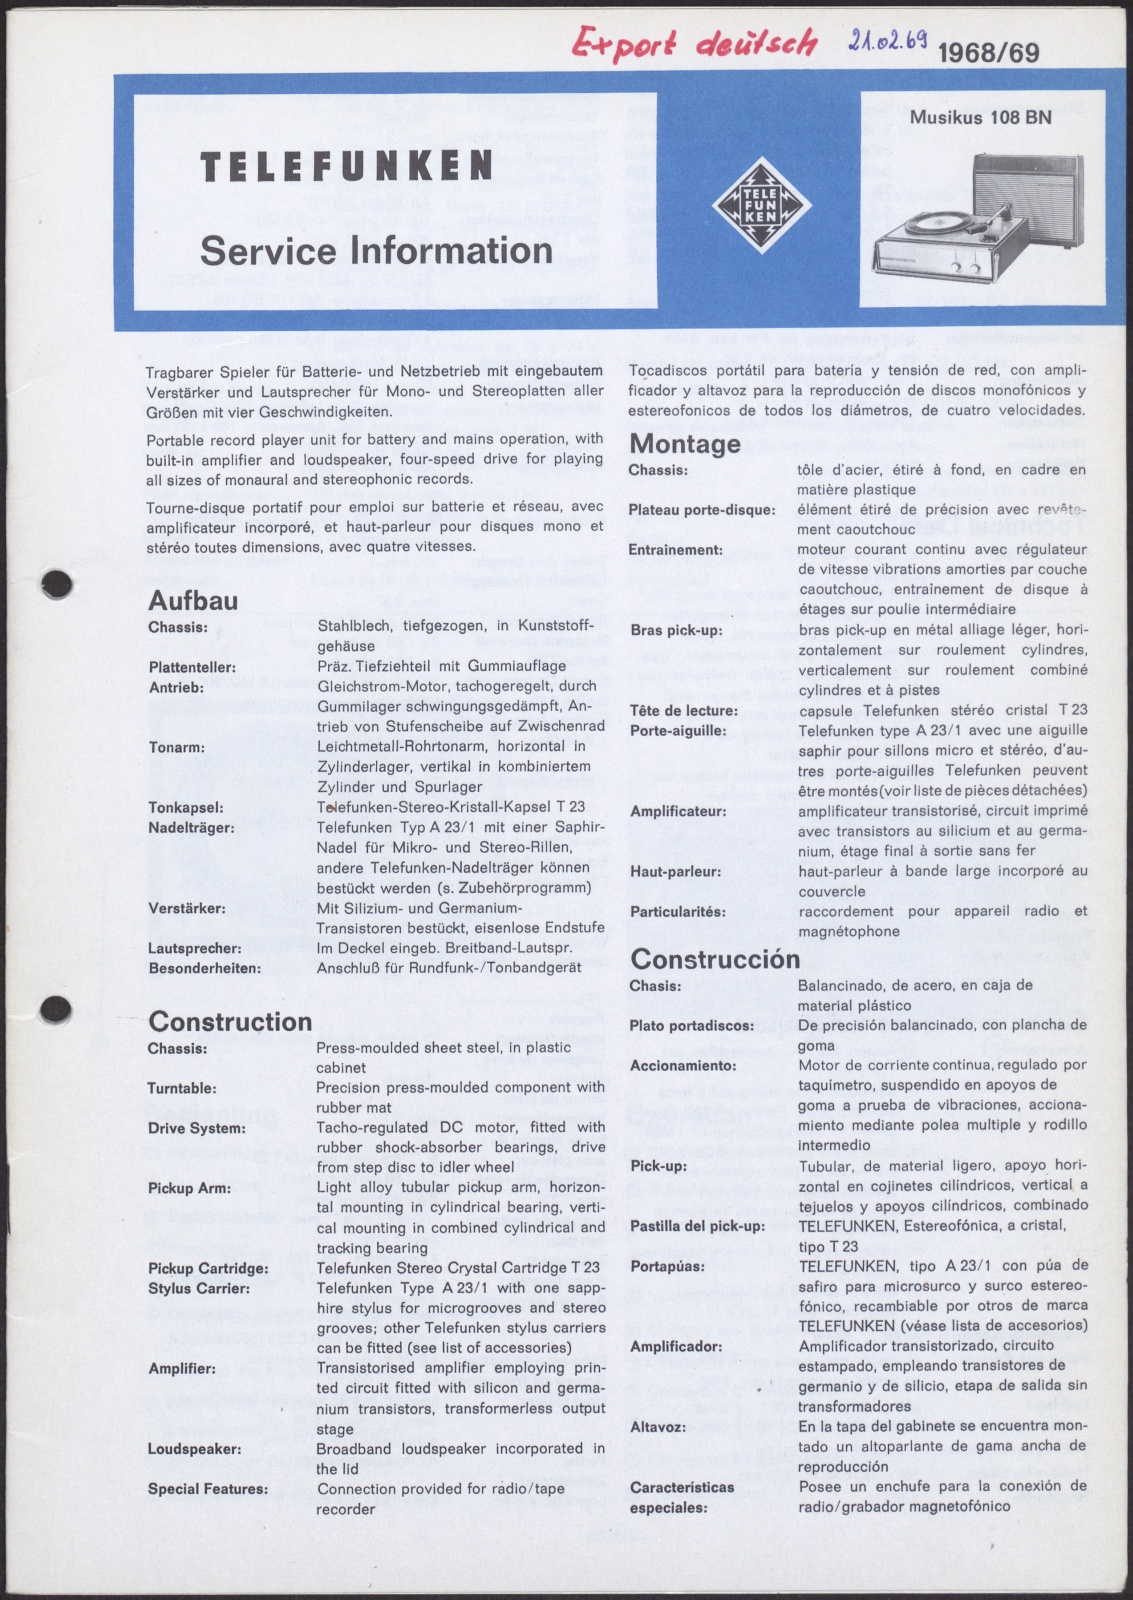 Bedienungsanleitung: Telefunken Service Information für Musikus 108 BN (Stiftung Deutsches Technikmuseum Berlin CC0)